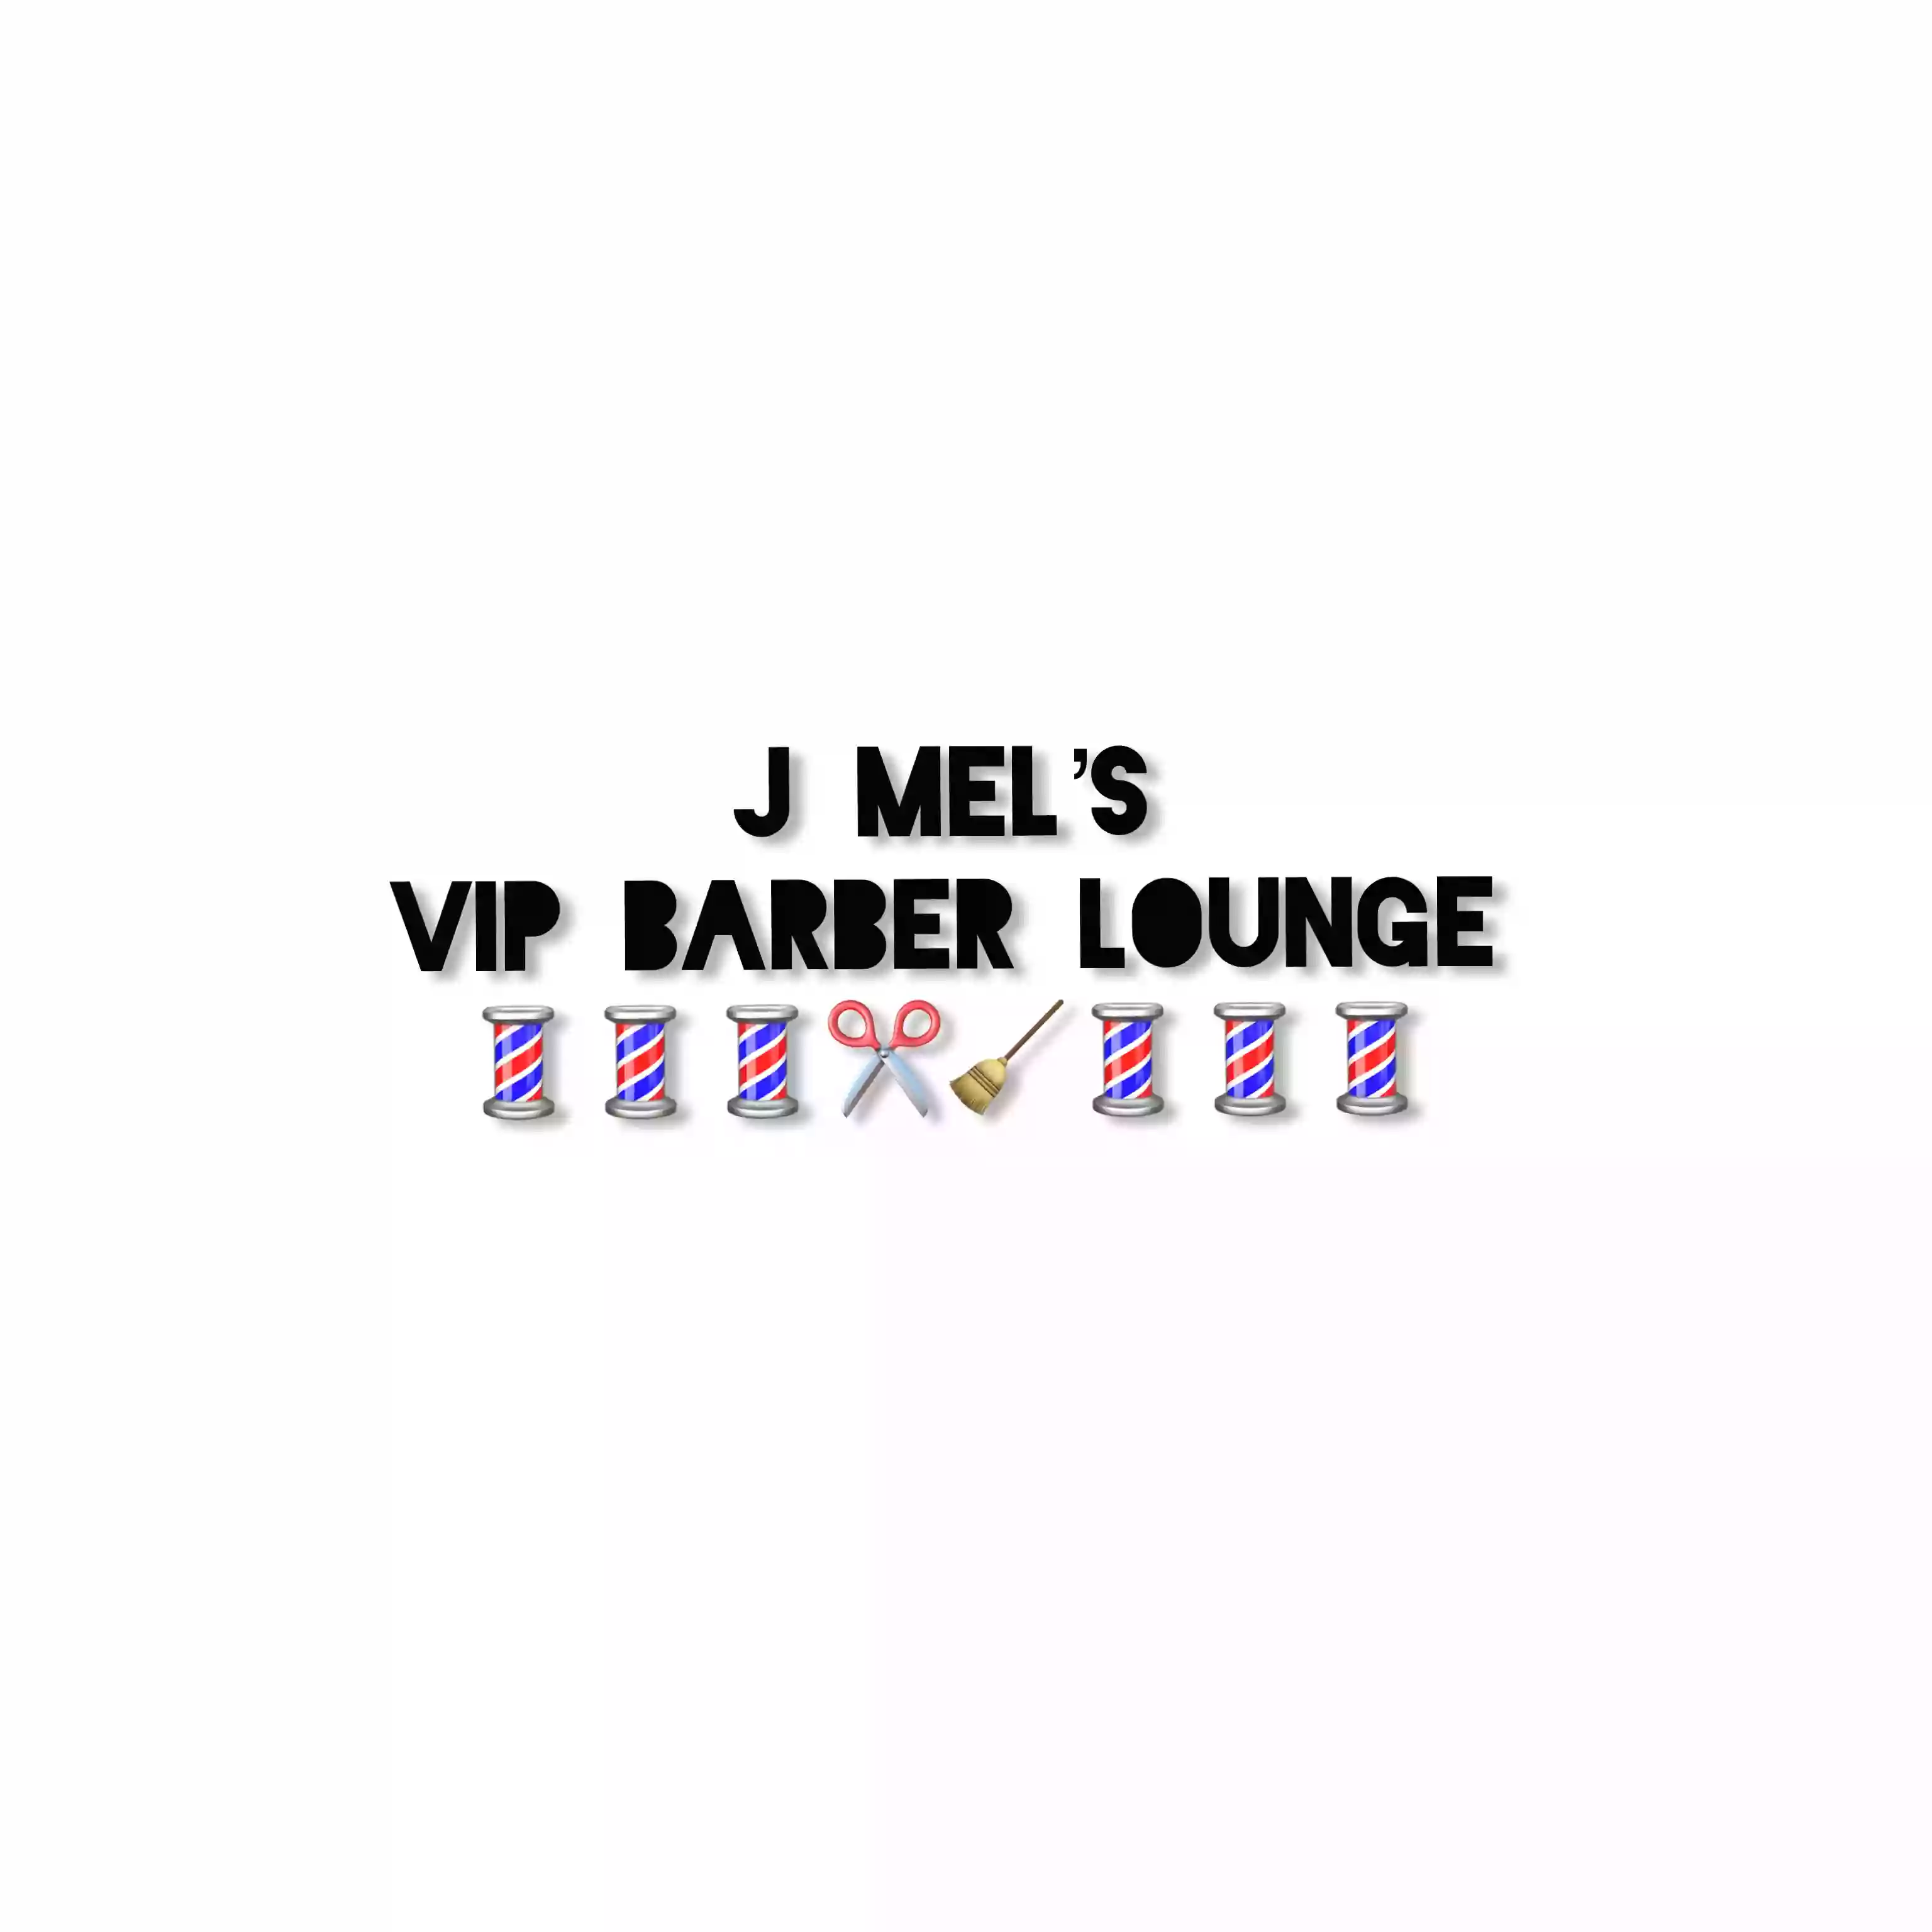 J Mels VIP Barber Lounge